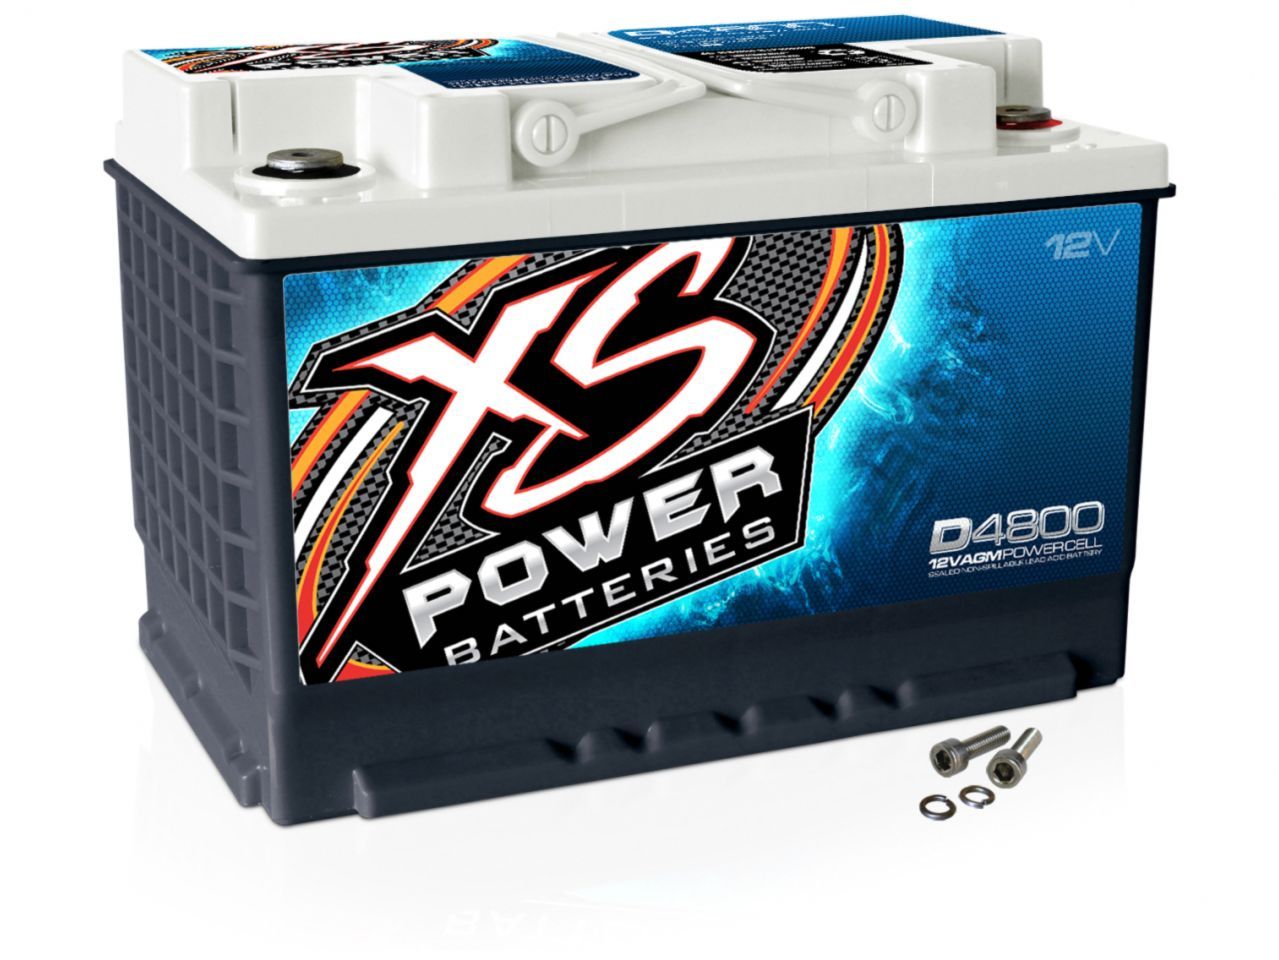 XS Power Batteries D4800 Item Image